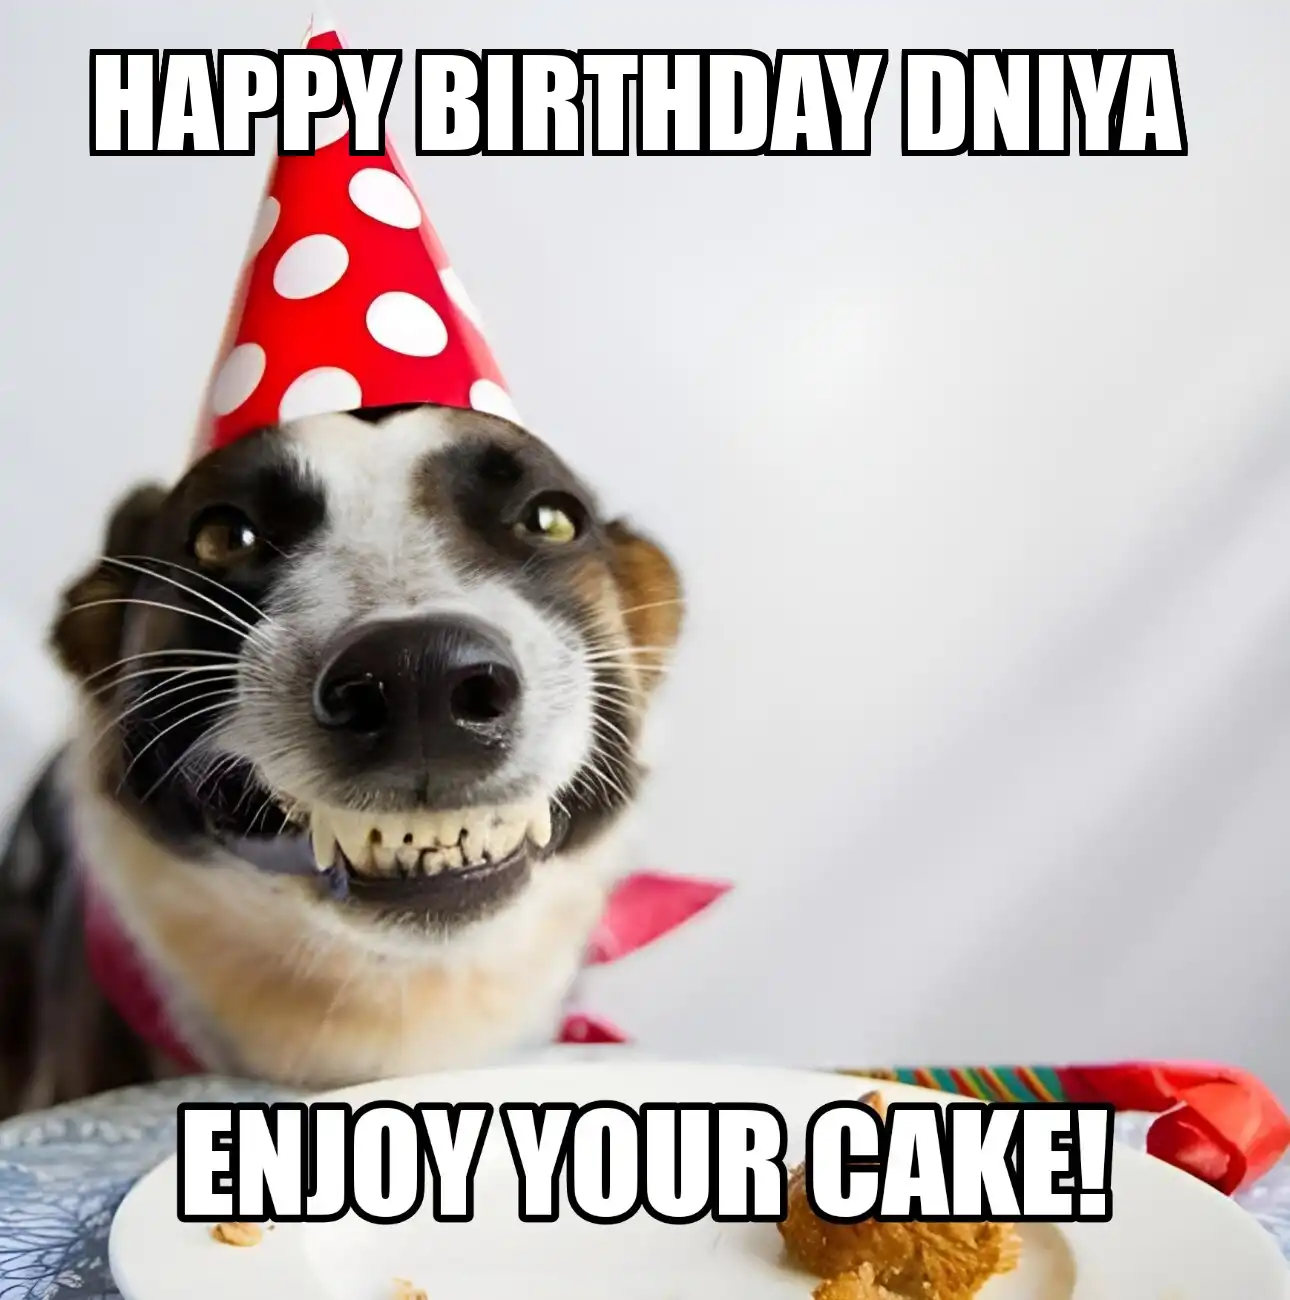 Happy Birthday Dniya Enjoy Your Cake Dog Meme